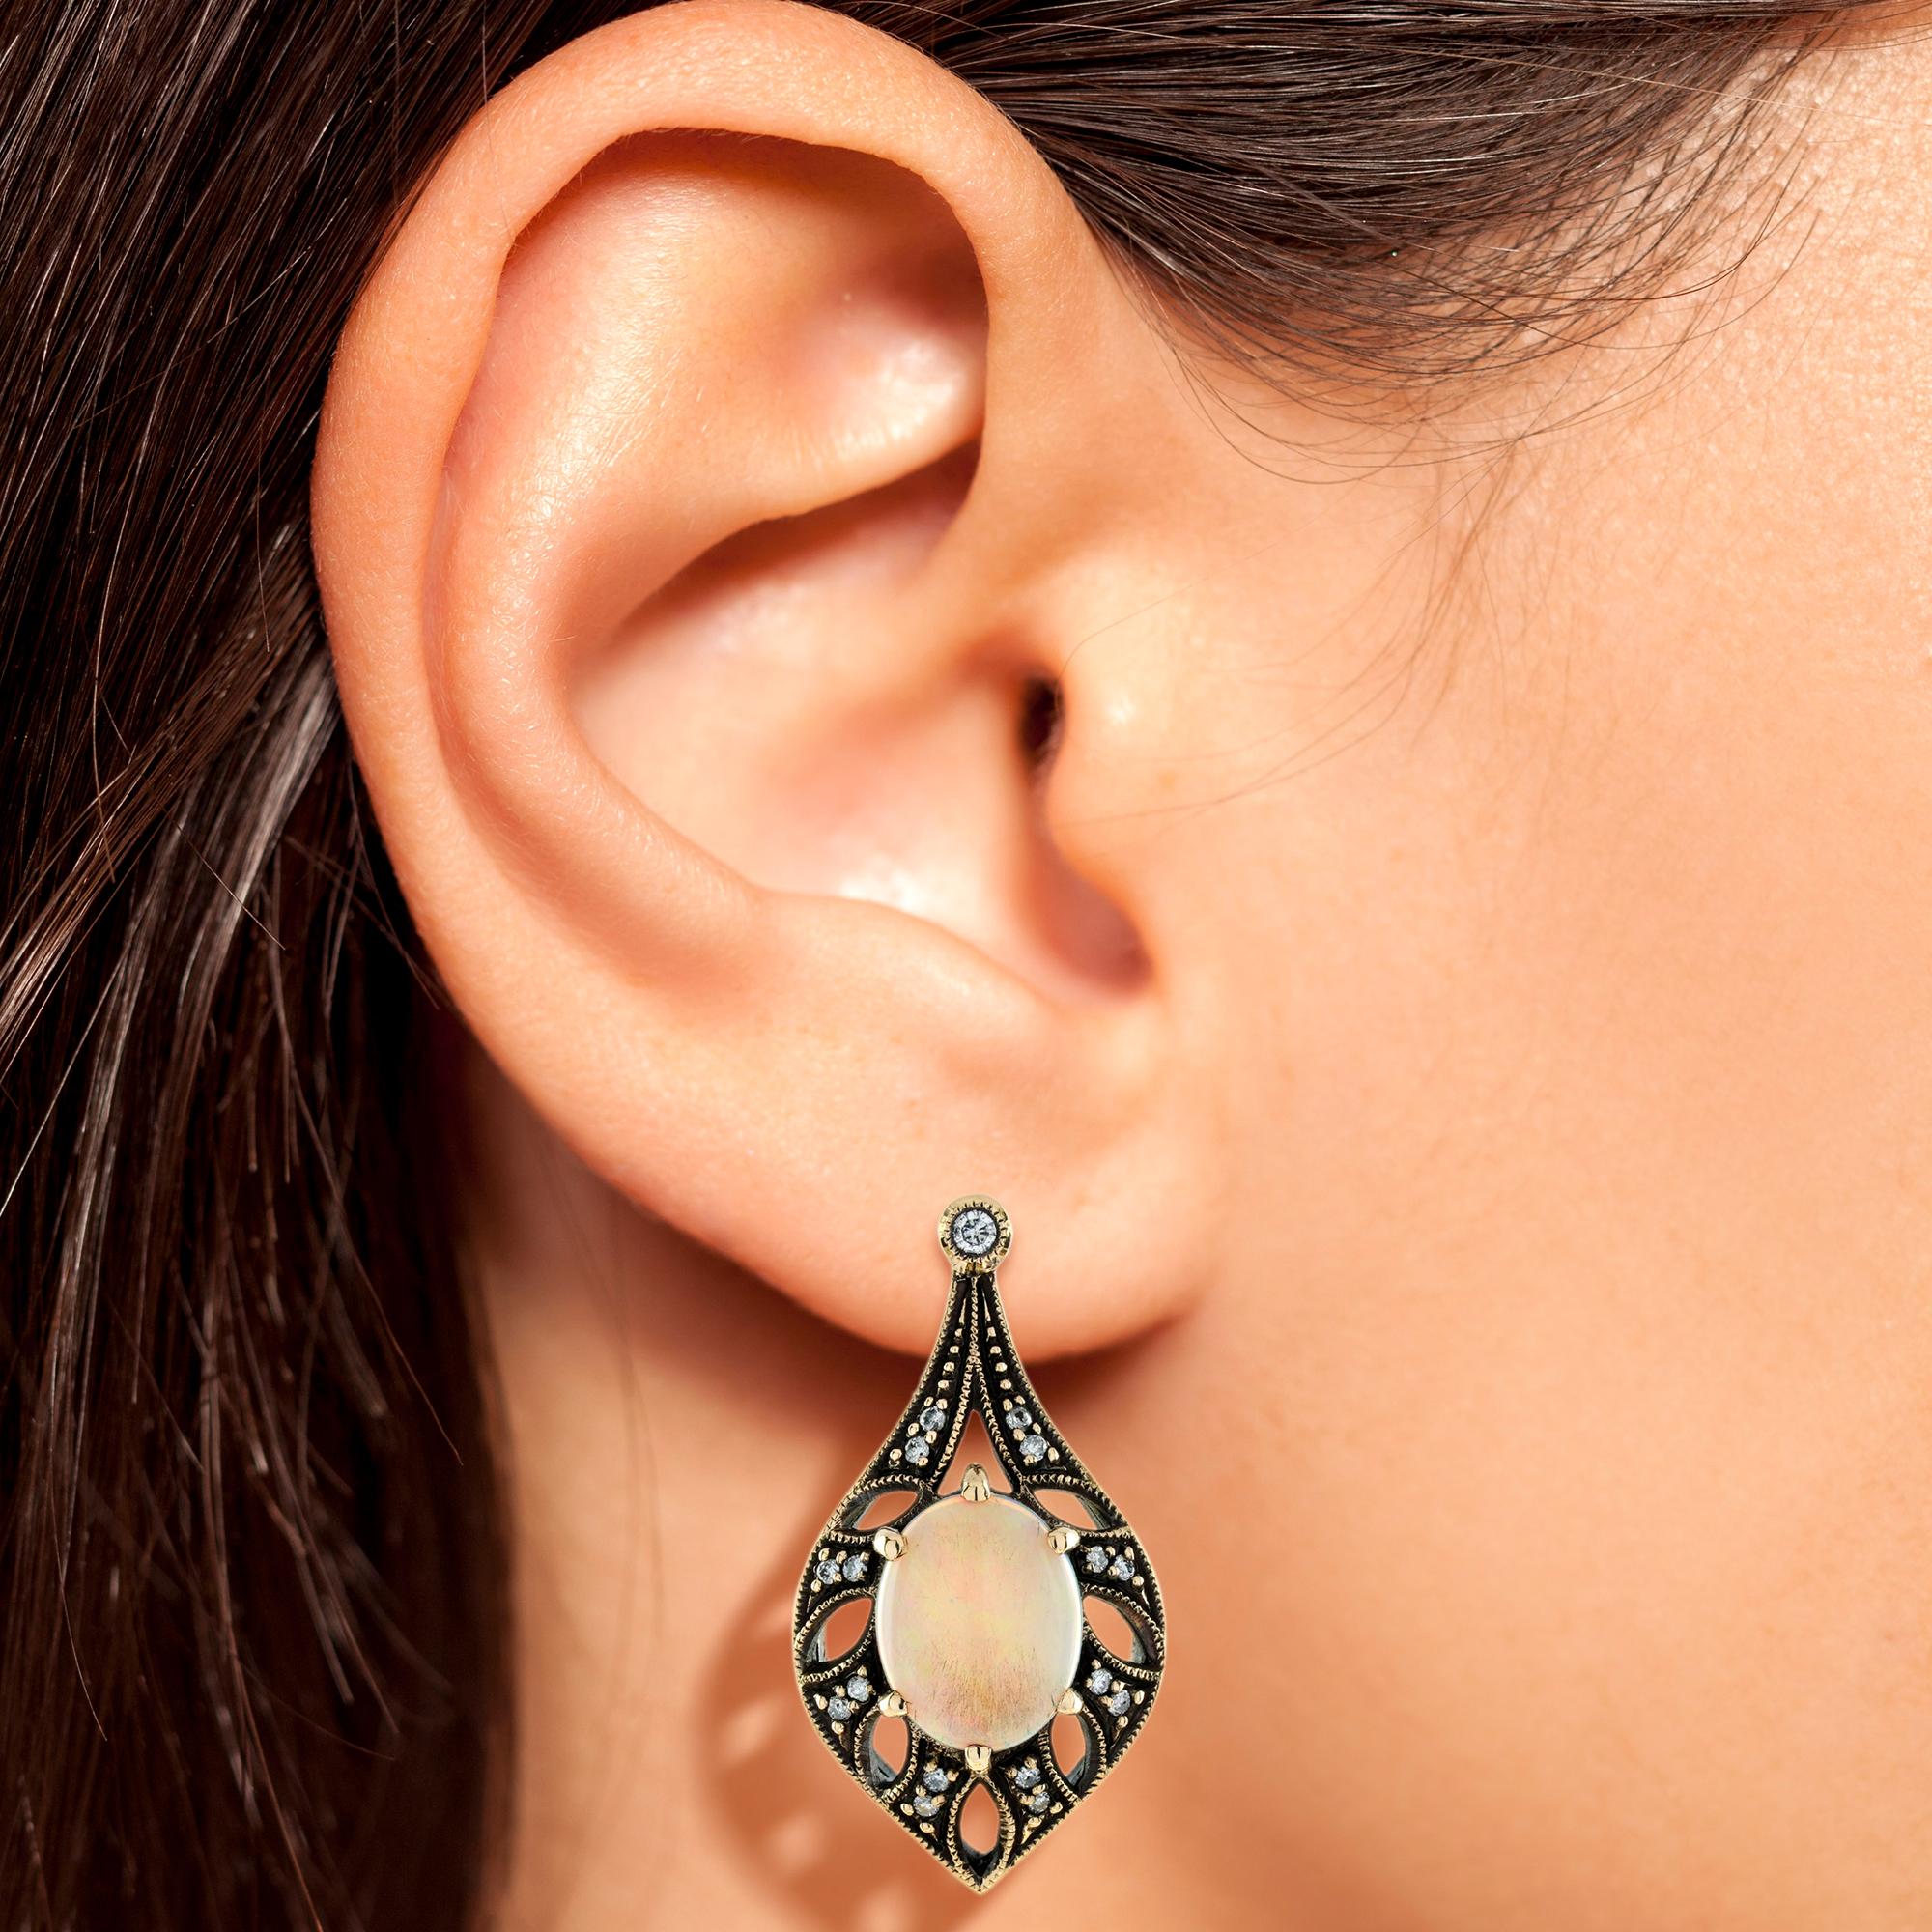 Dies ist ein exquisites Paar Opaltropfen-Ohrringe im Vintage-Design. Die Ohrringe haben ein durchbrochenes Design mit ovalen Opalen in der Mitte, die von schönen, funkelnden Diamanten umgeben sind. Alle Ohrringe sind aus 9 Karat Gelbgold. 

Ohrringe